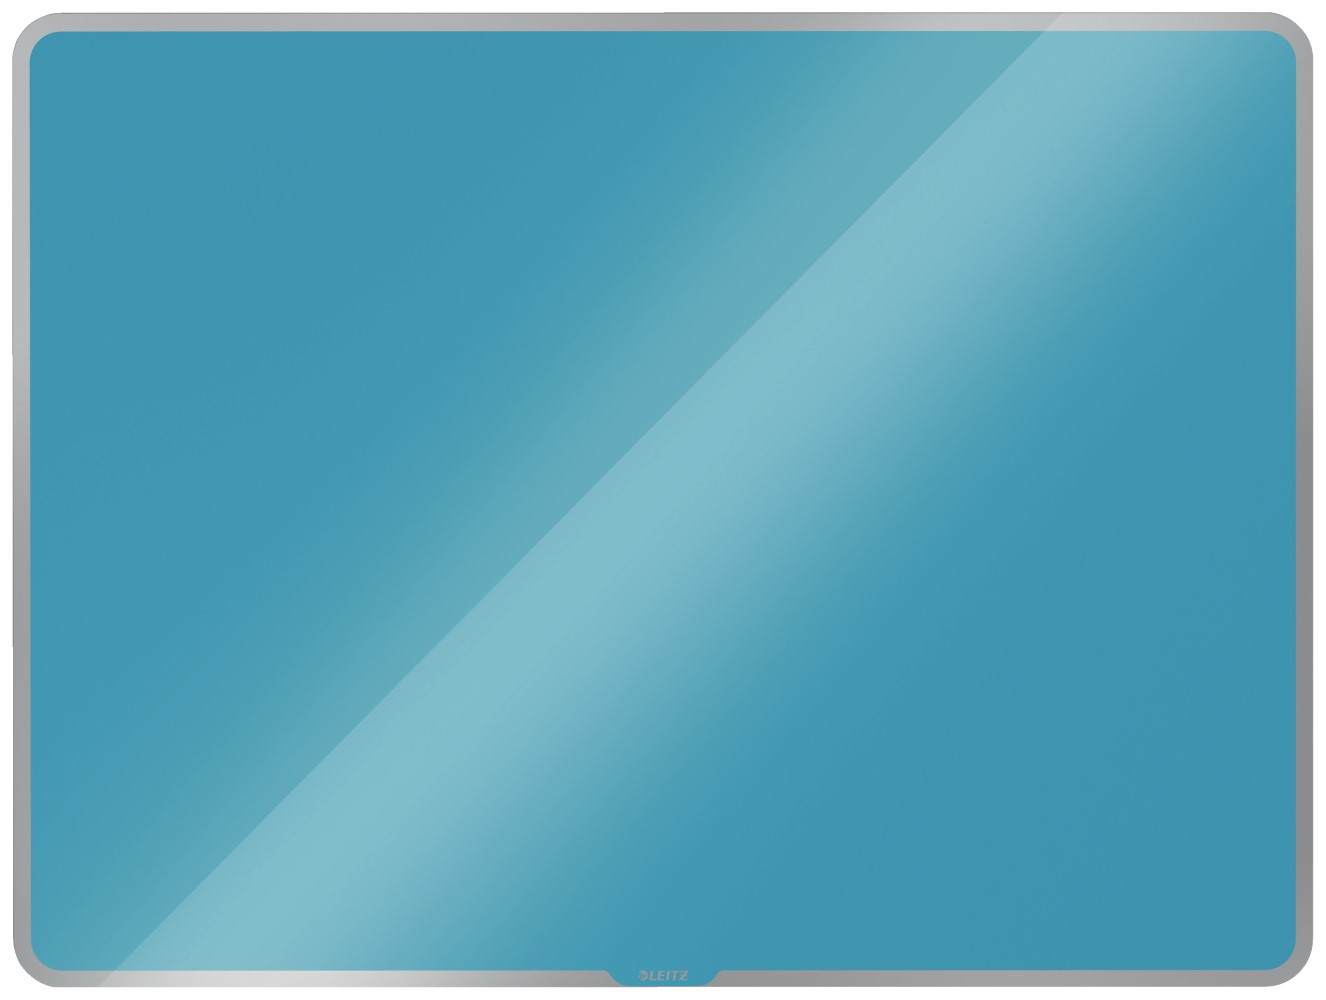 Szklana tablica magnetyczna Leitz Cosy 80x60cm, niebieska